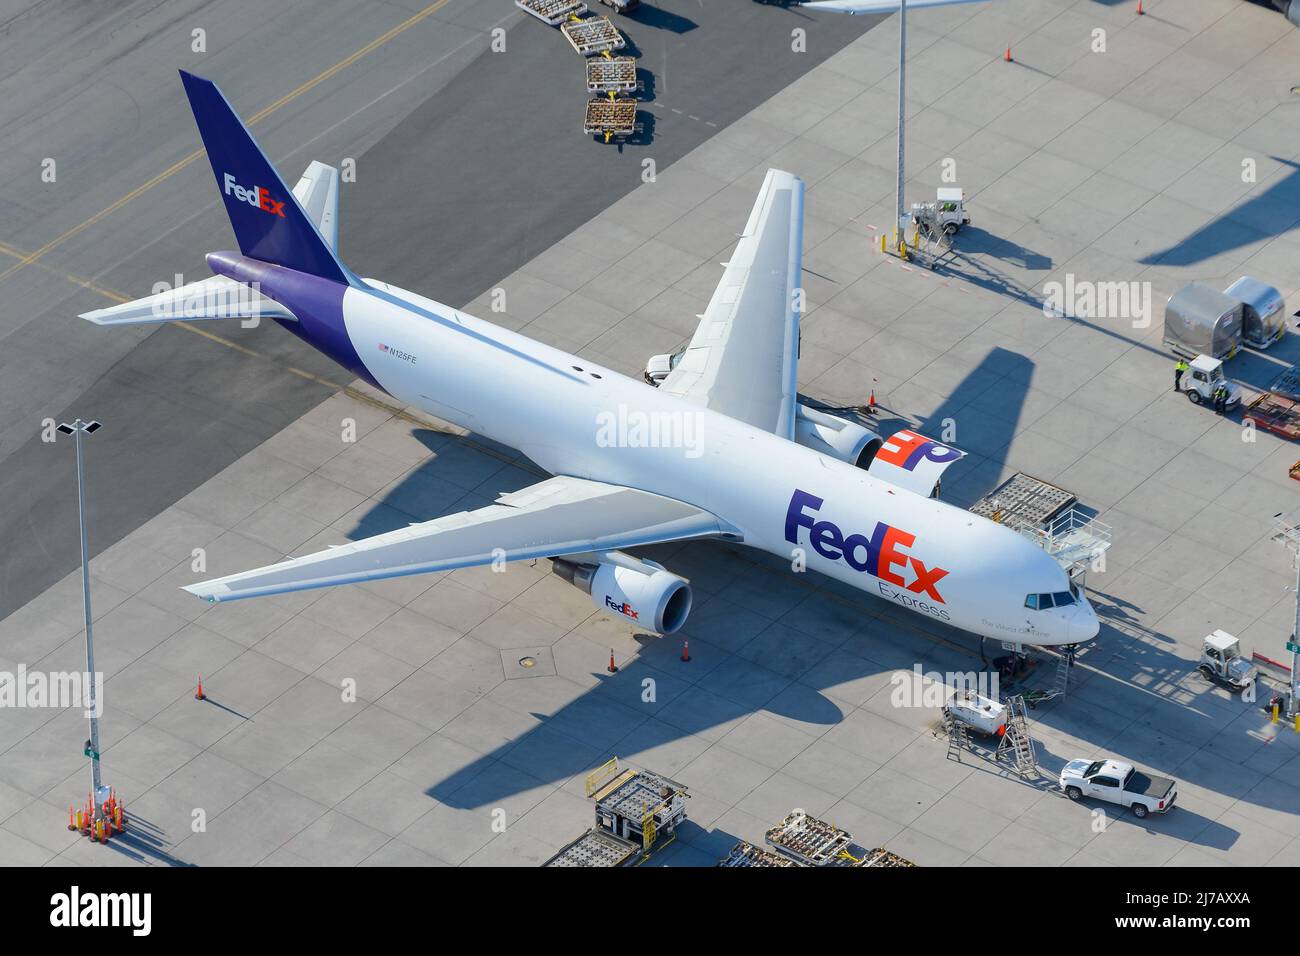 FedEx Boeing 767 Frachtflugzeug. Flugzeuge, um Fracht von Fedex zu transportieren. Stockfoto